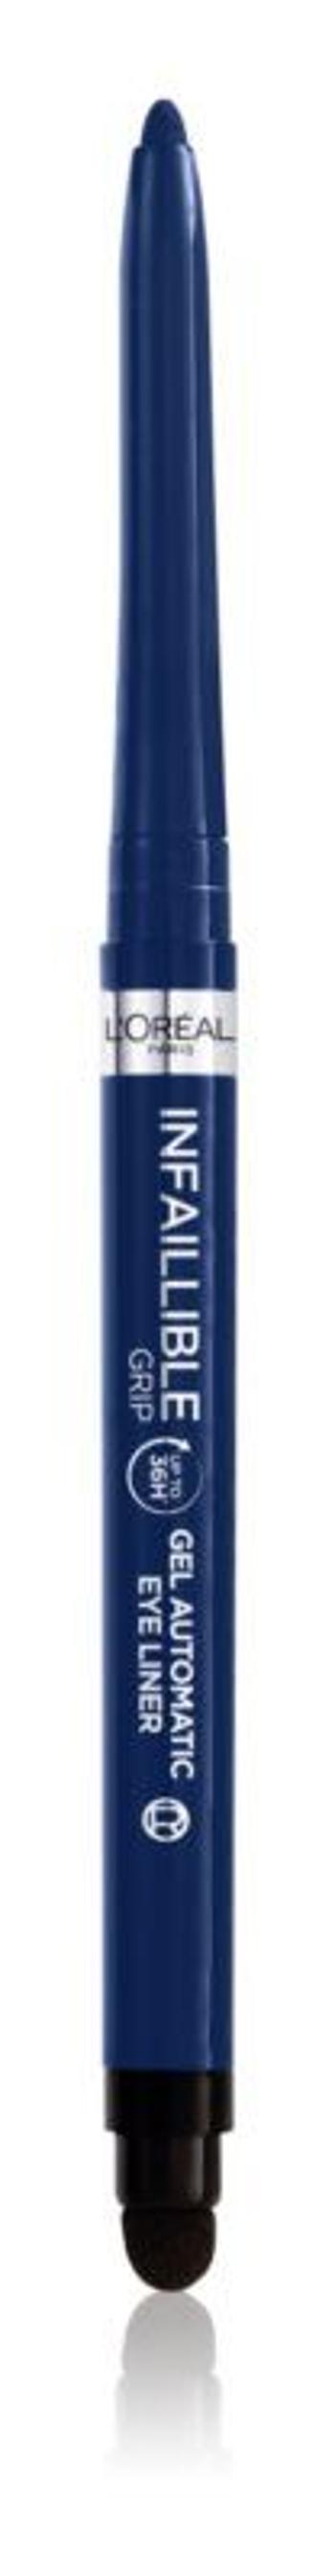 Loréal Paris Infaillible Grip 36h Gel Automatic Liner tužka na oči modrá